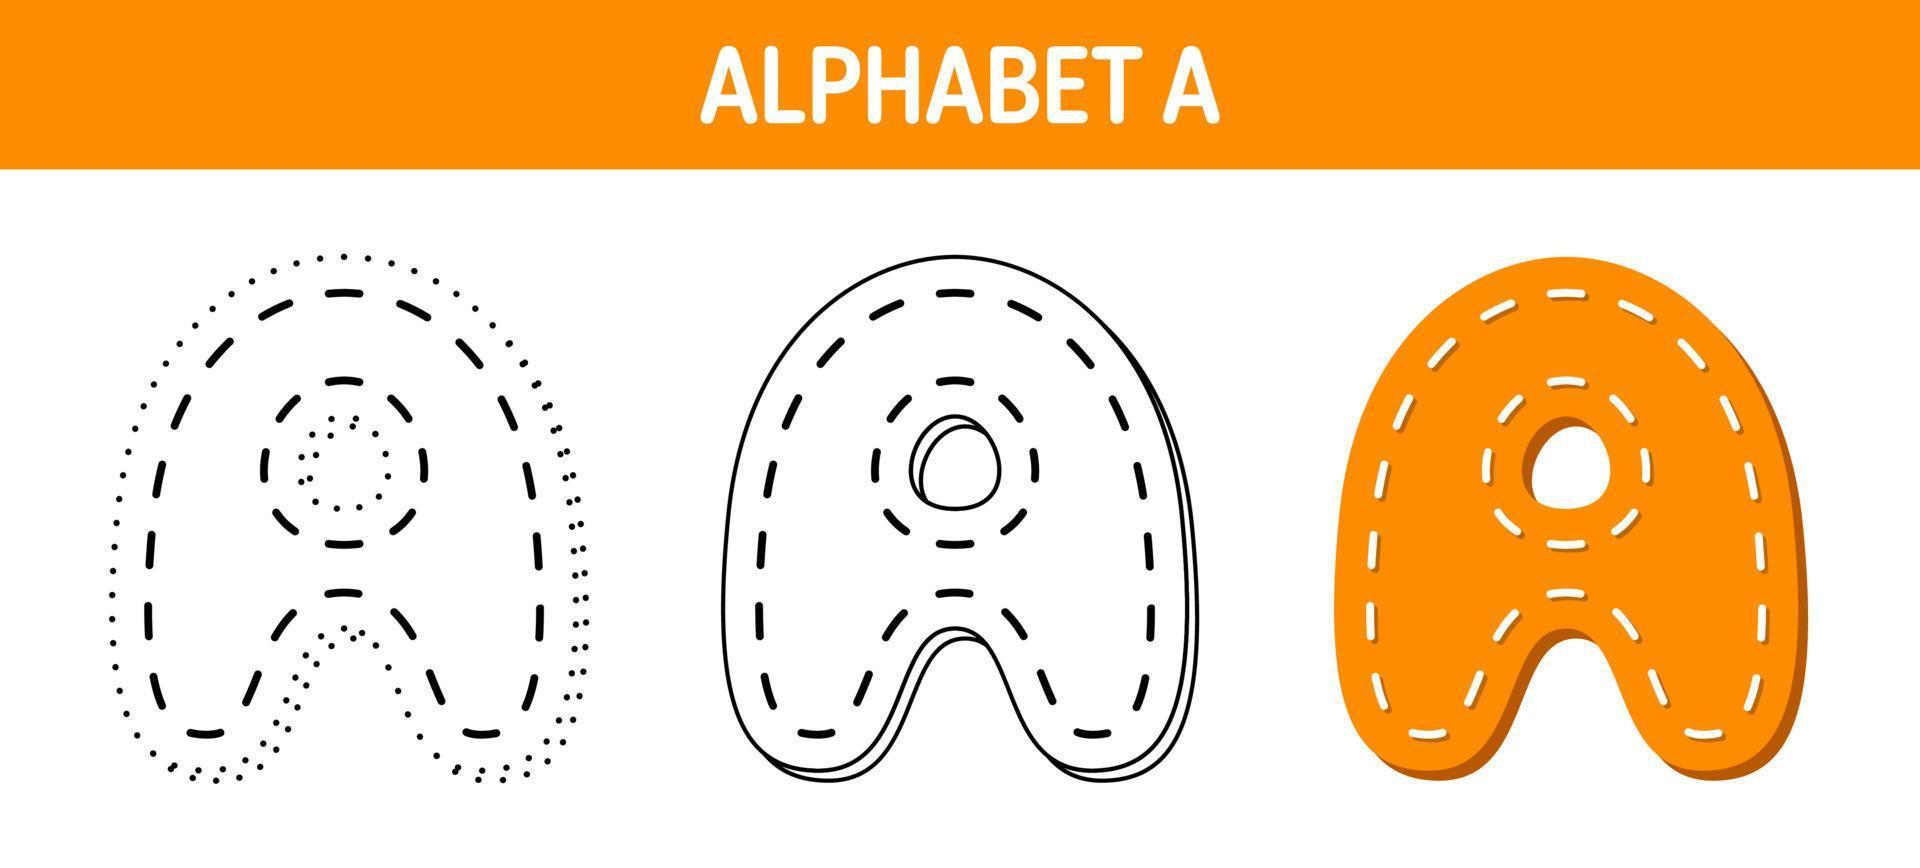 Alphabet ein Arbeitsblatt zum Nachzeichnen und Ausmalen für Kinder vektor